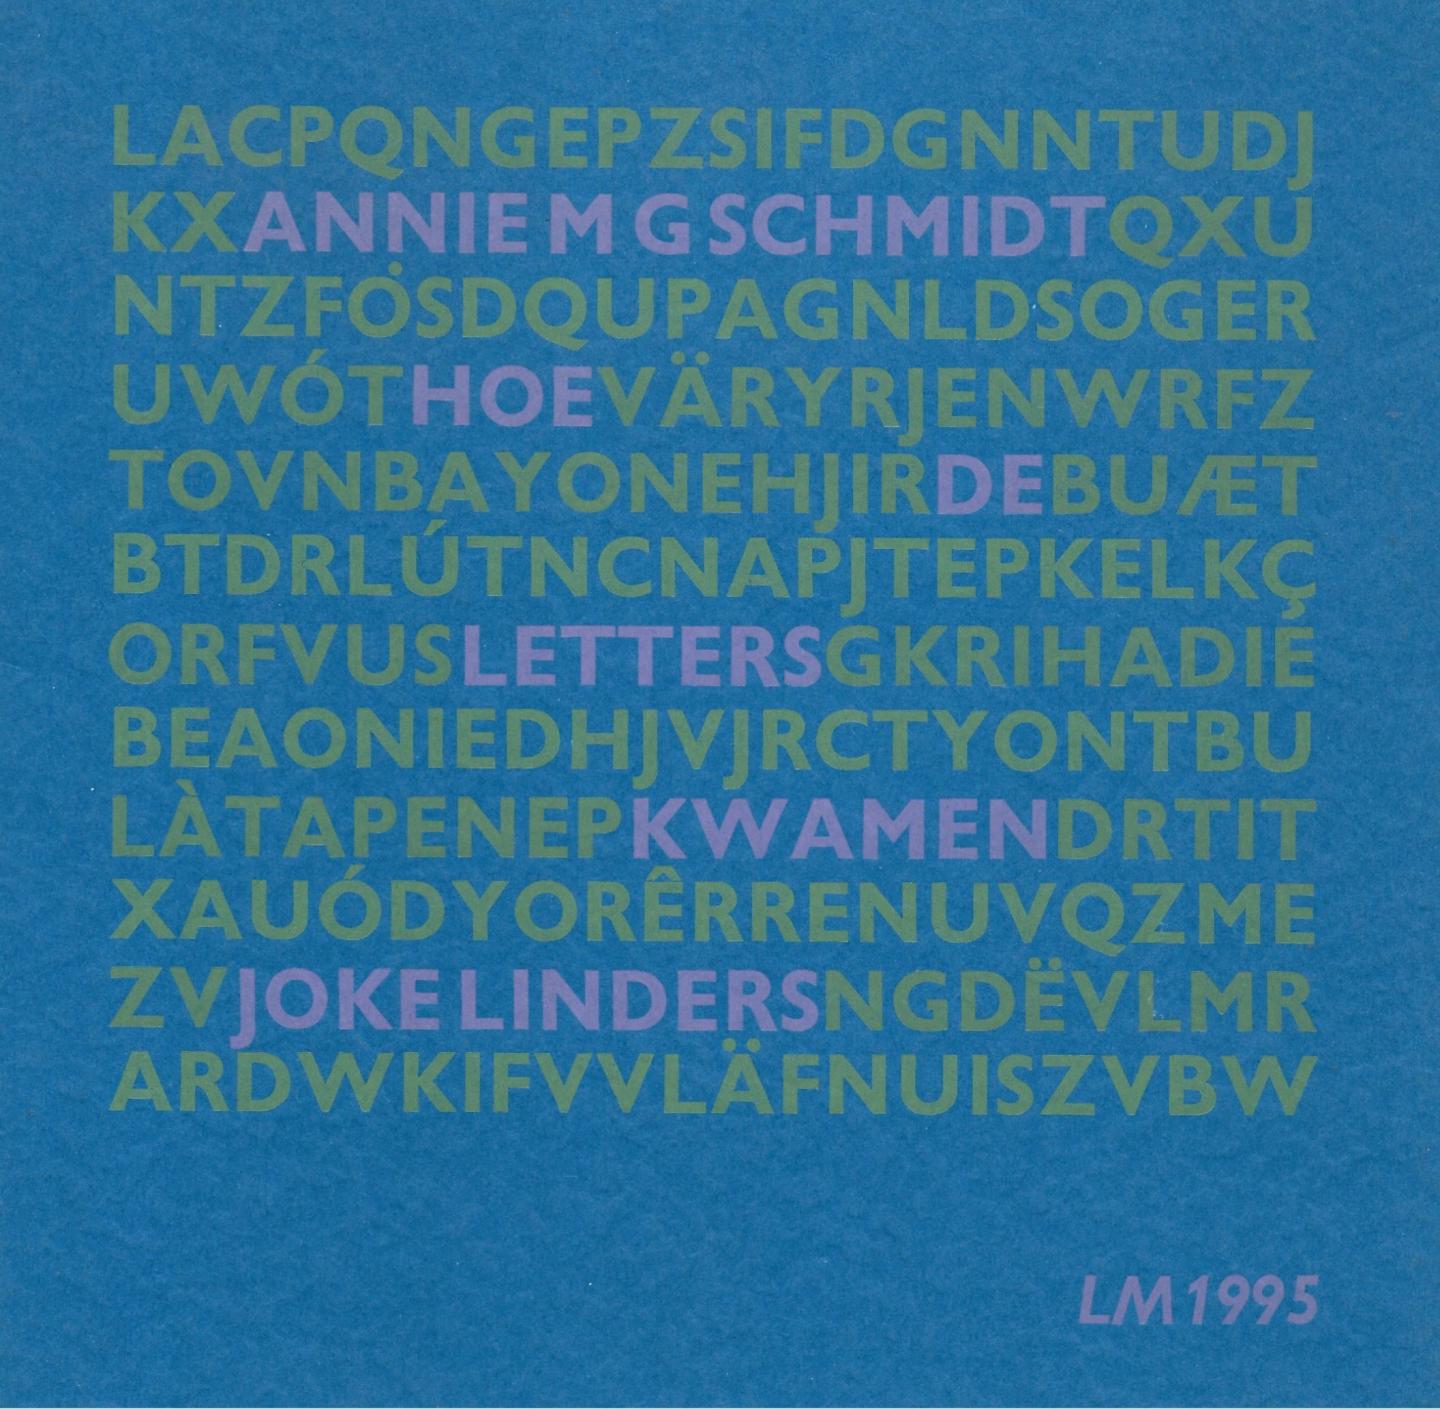 Linders, Joke - Hoe de letters kwamen    Toespraak van Joke Linders bij de opening van de tentoonstelling De A van Annie